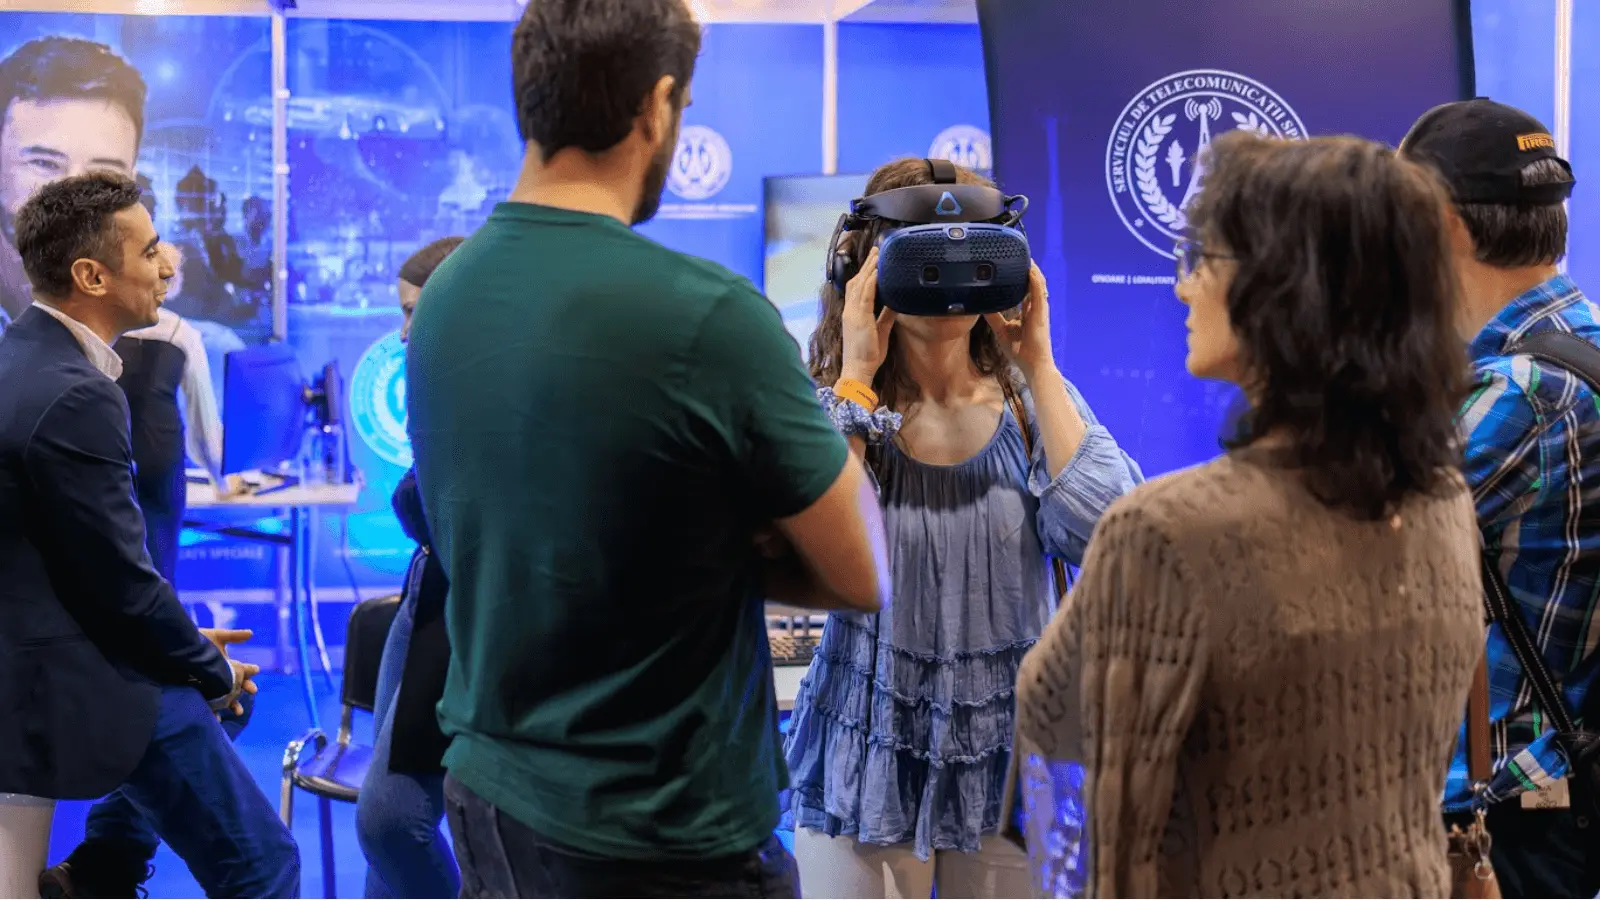 În cadrul Tech Expo, vizitatorii vor avea șansa de a descoperi cele mai inovatoare soluții tehnologice